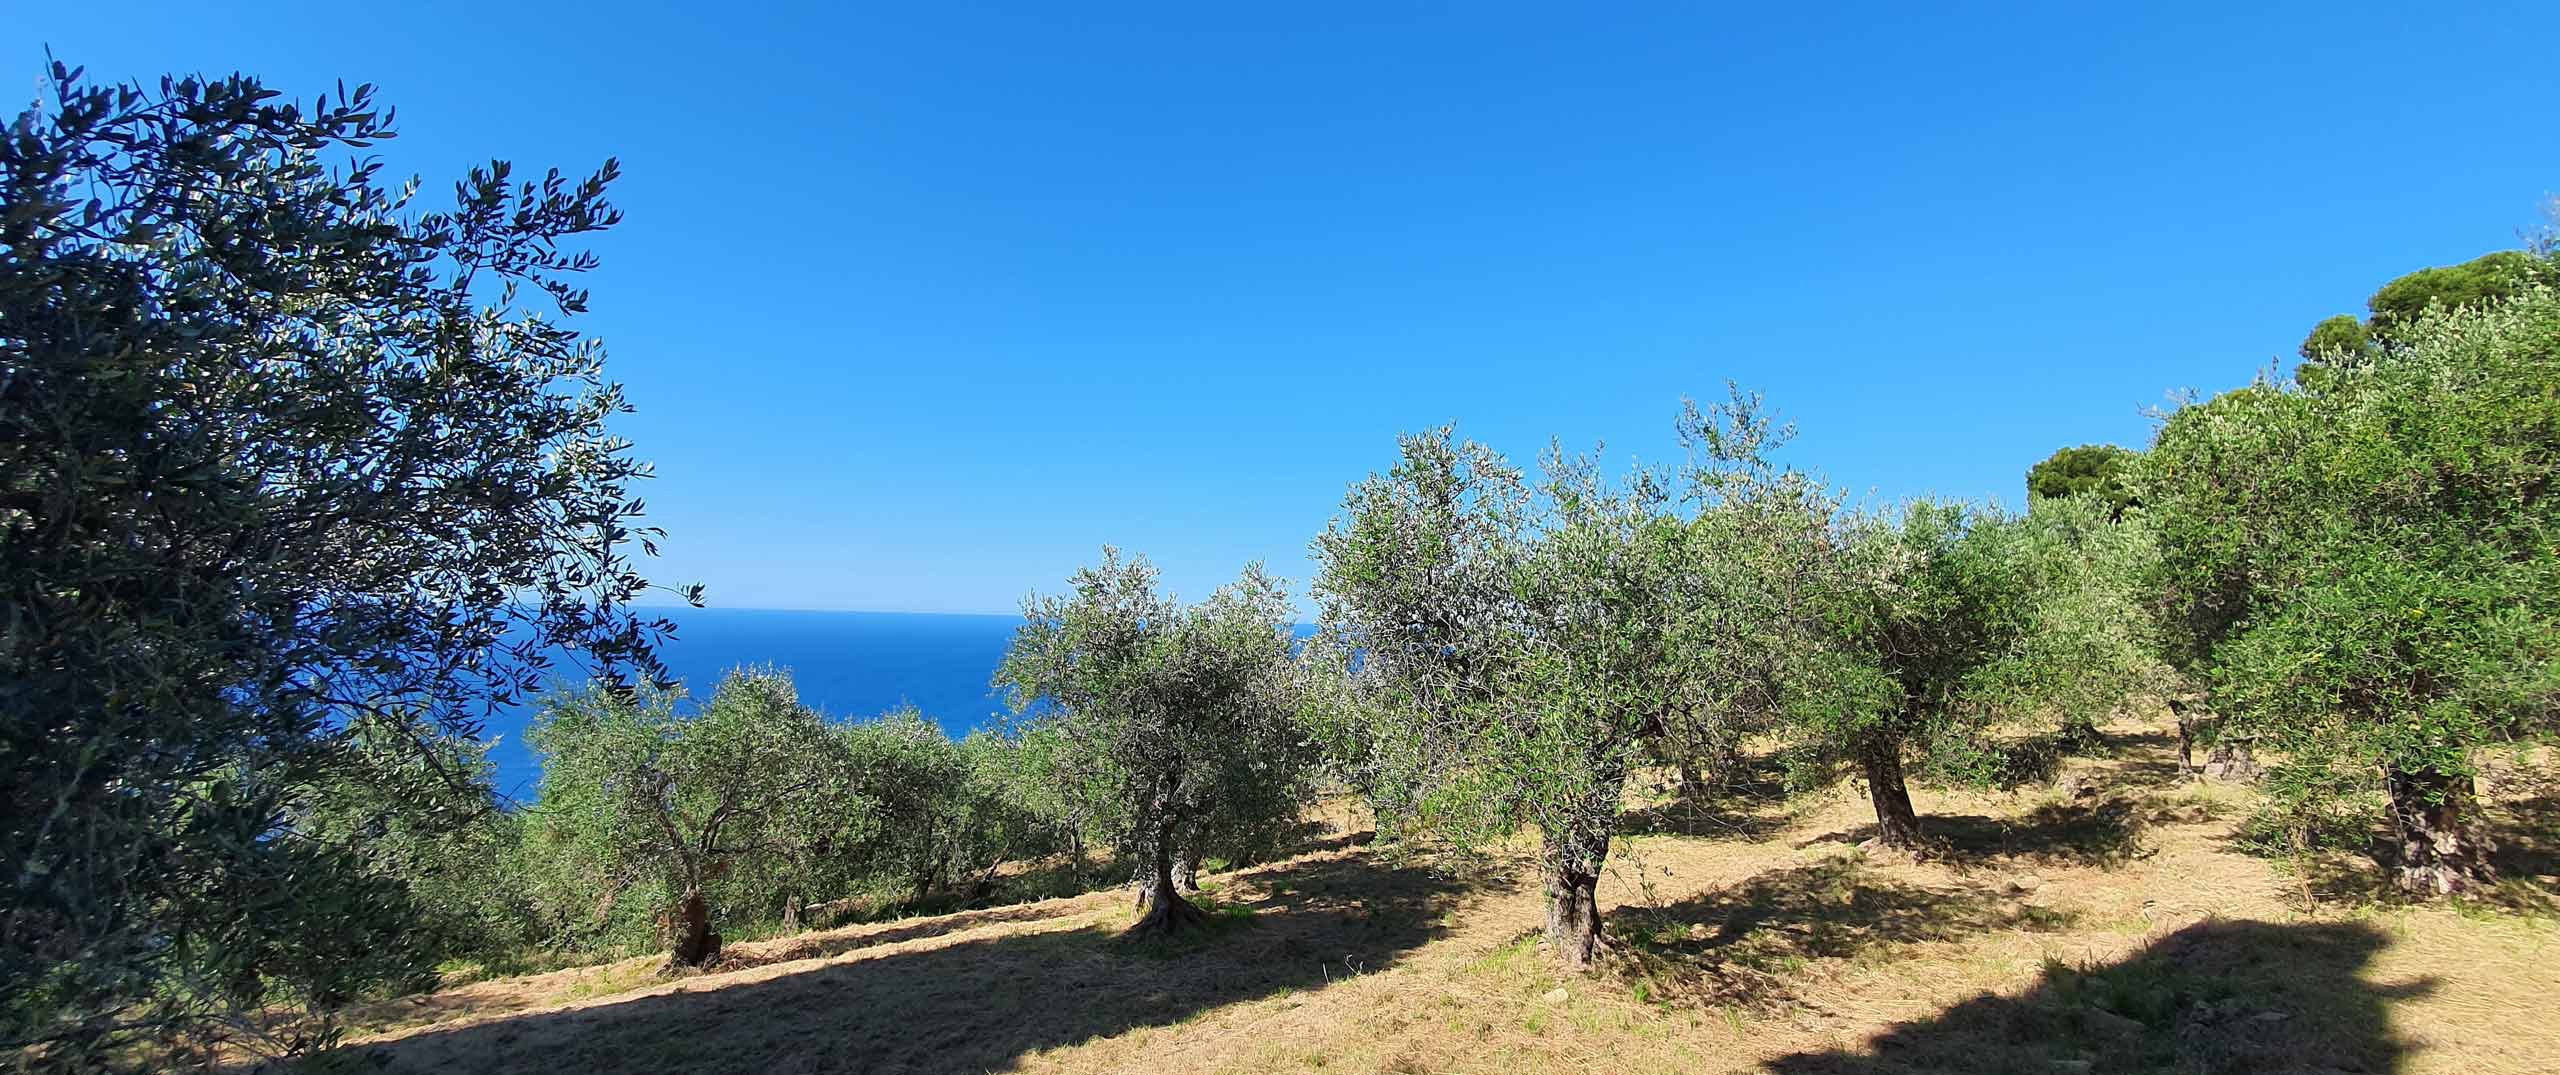 olivenbaum patenschaft italien titel